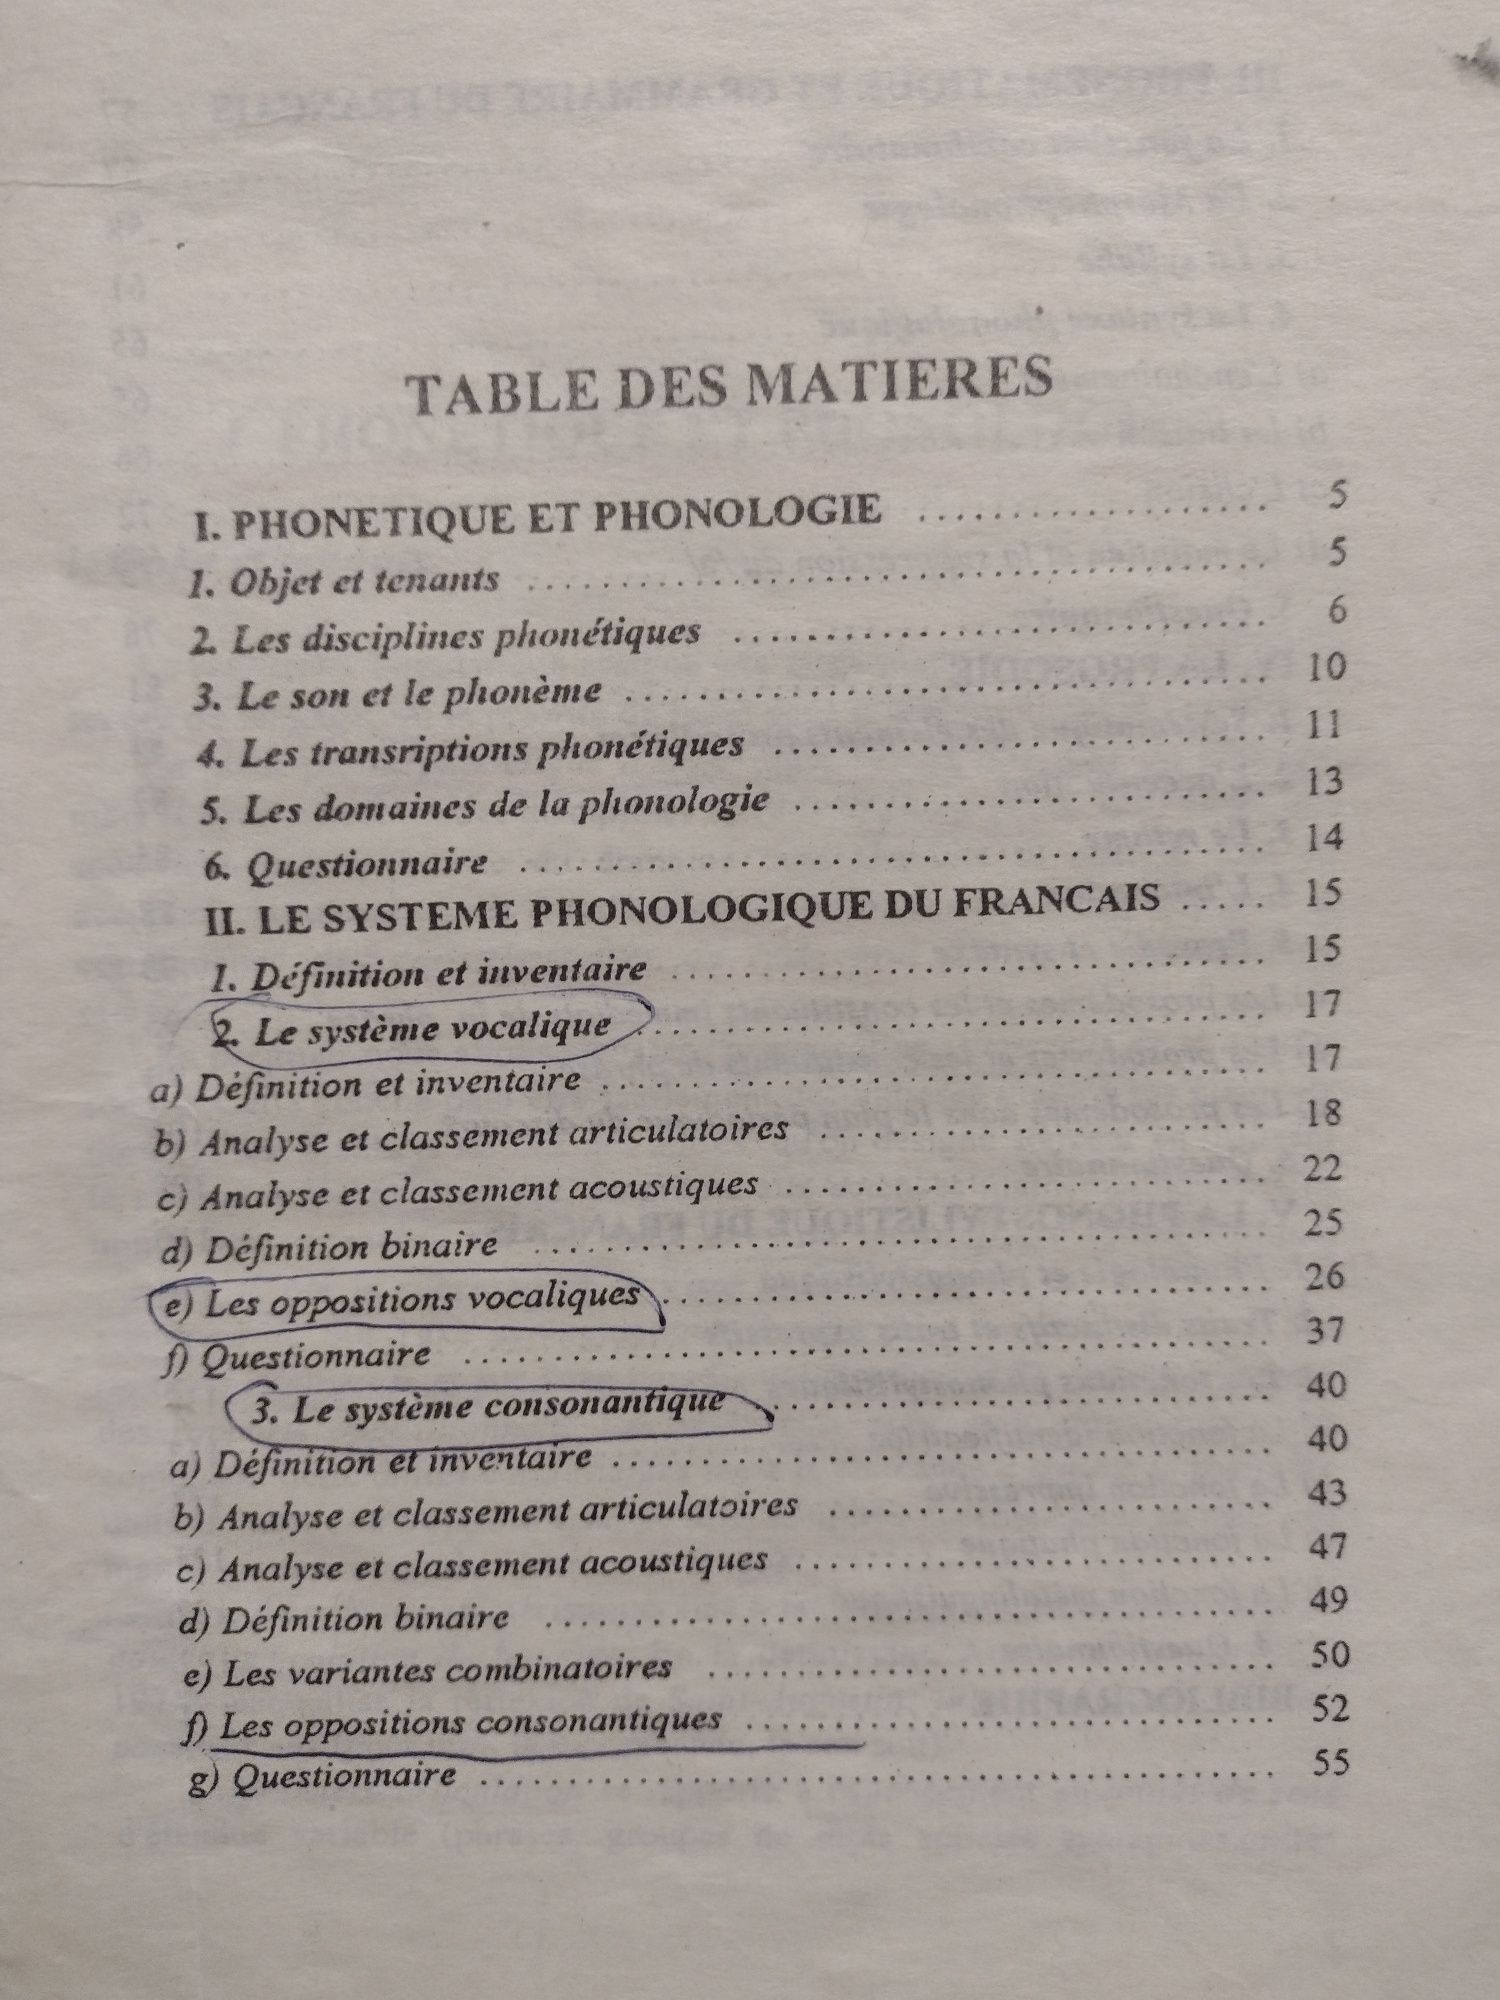 Théorie et pratique de la Phonologie du français, Maria Pavel